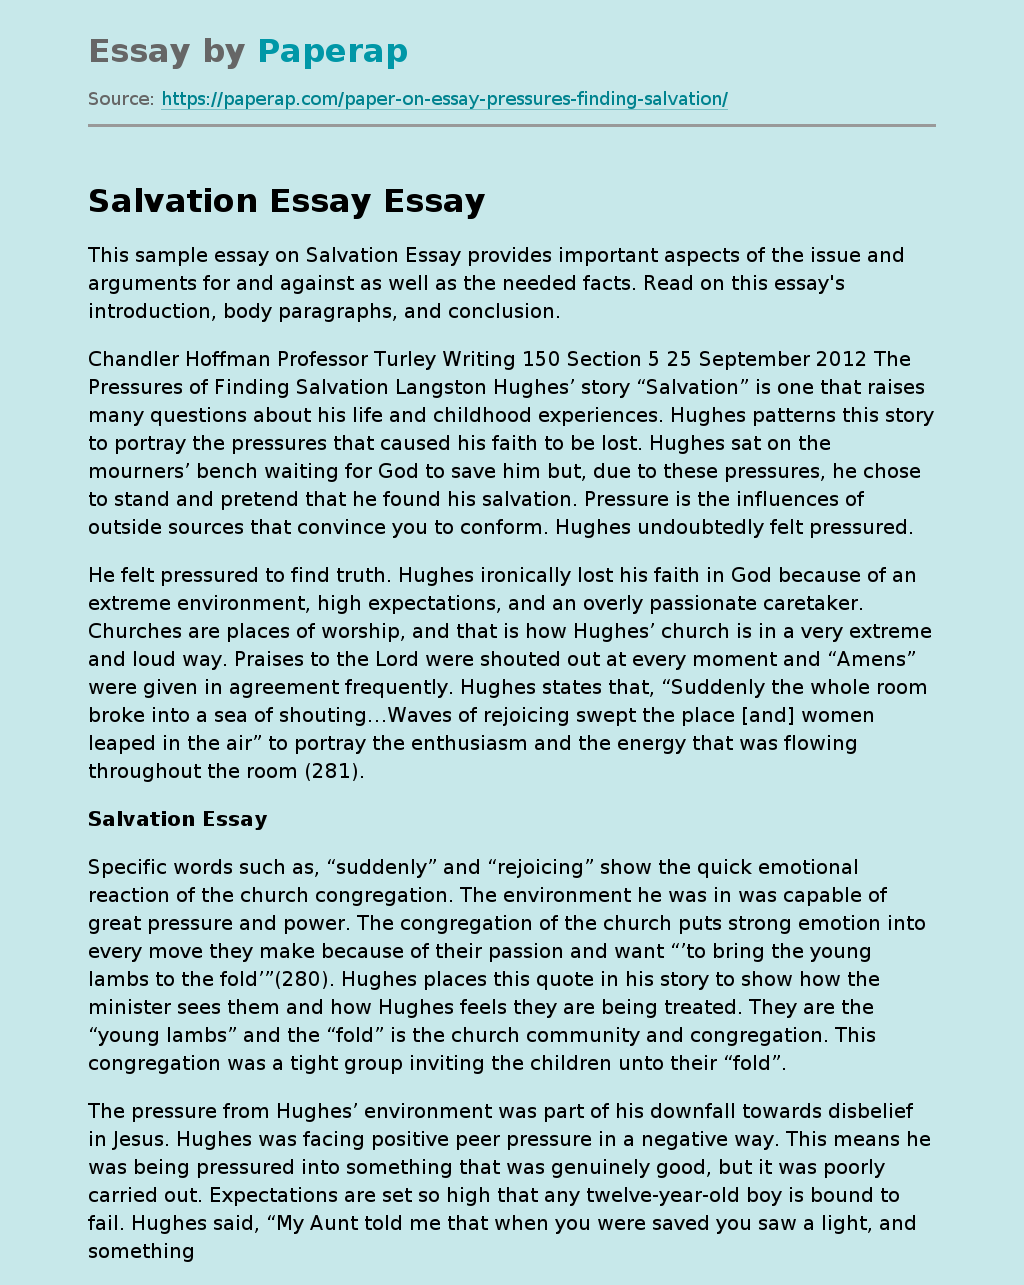 Sample Essay on Salvation Essay